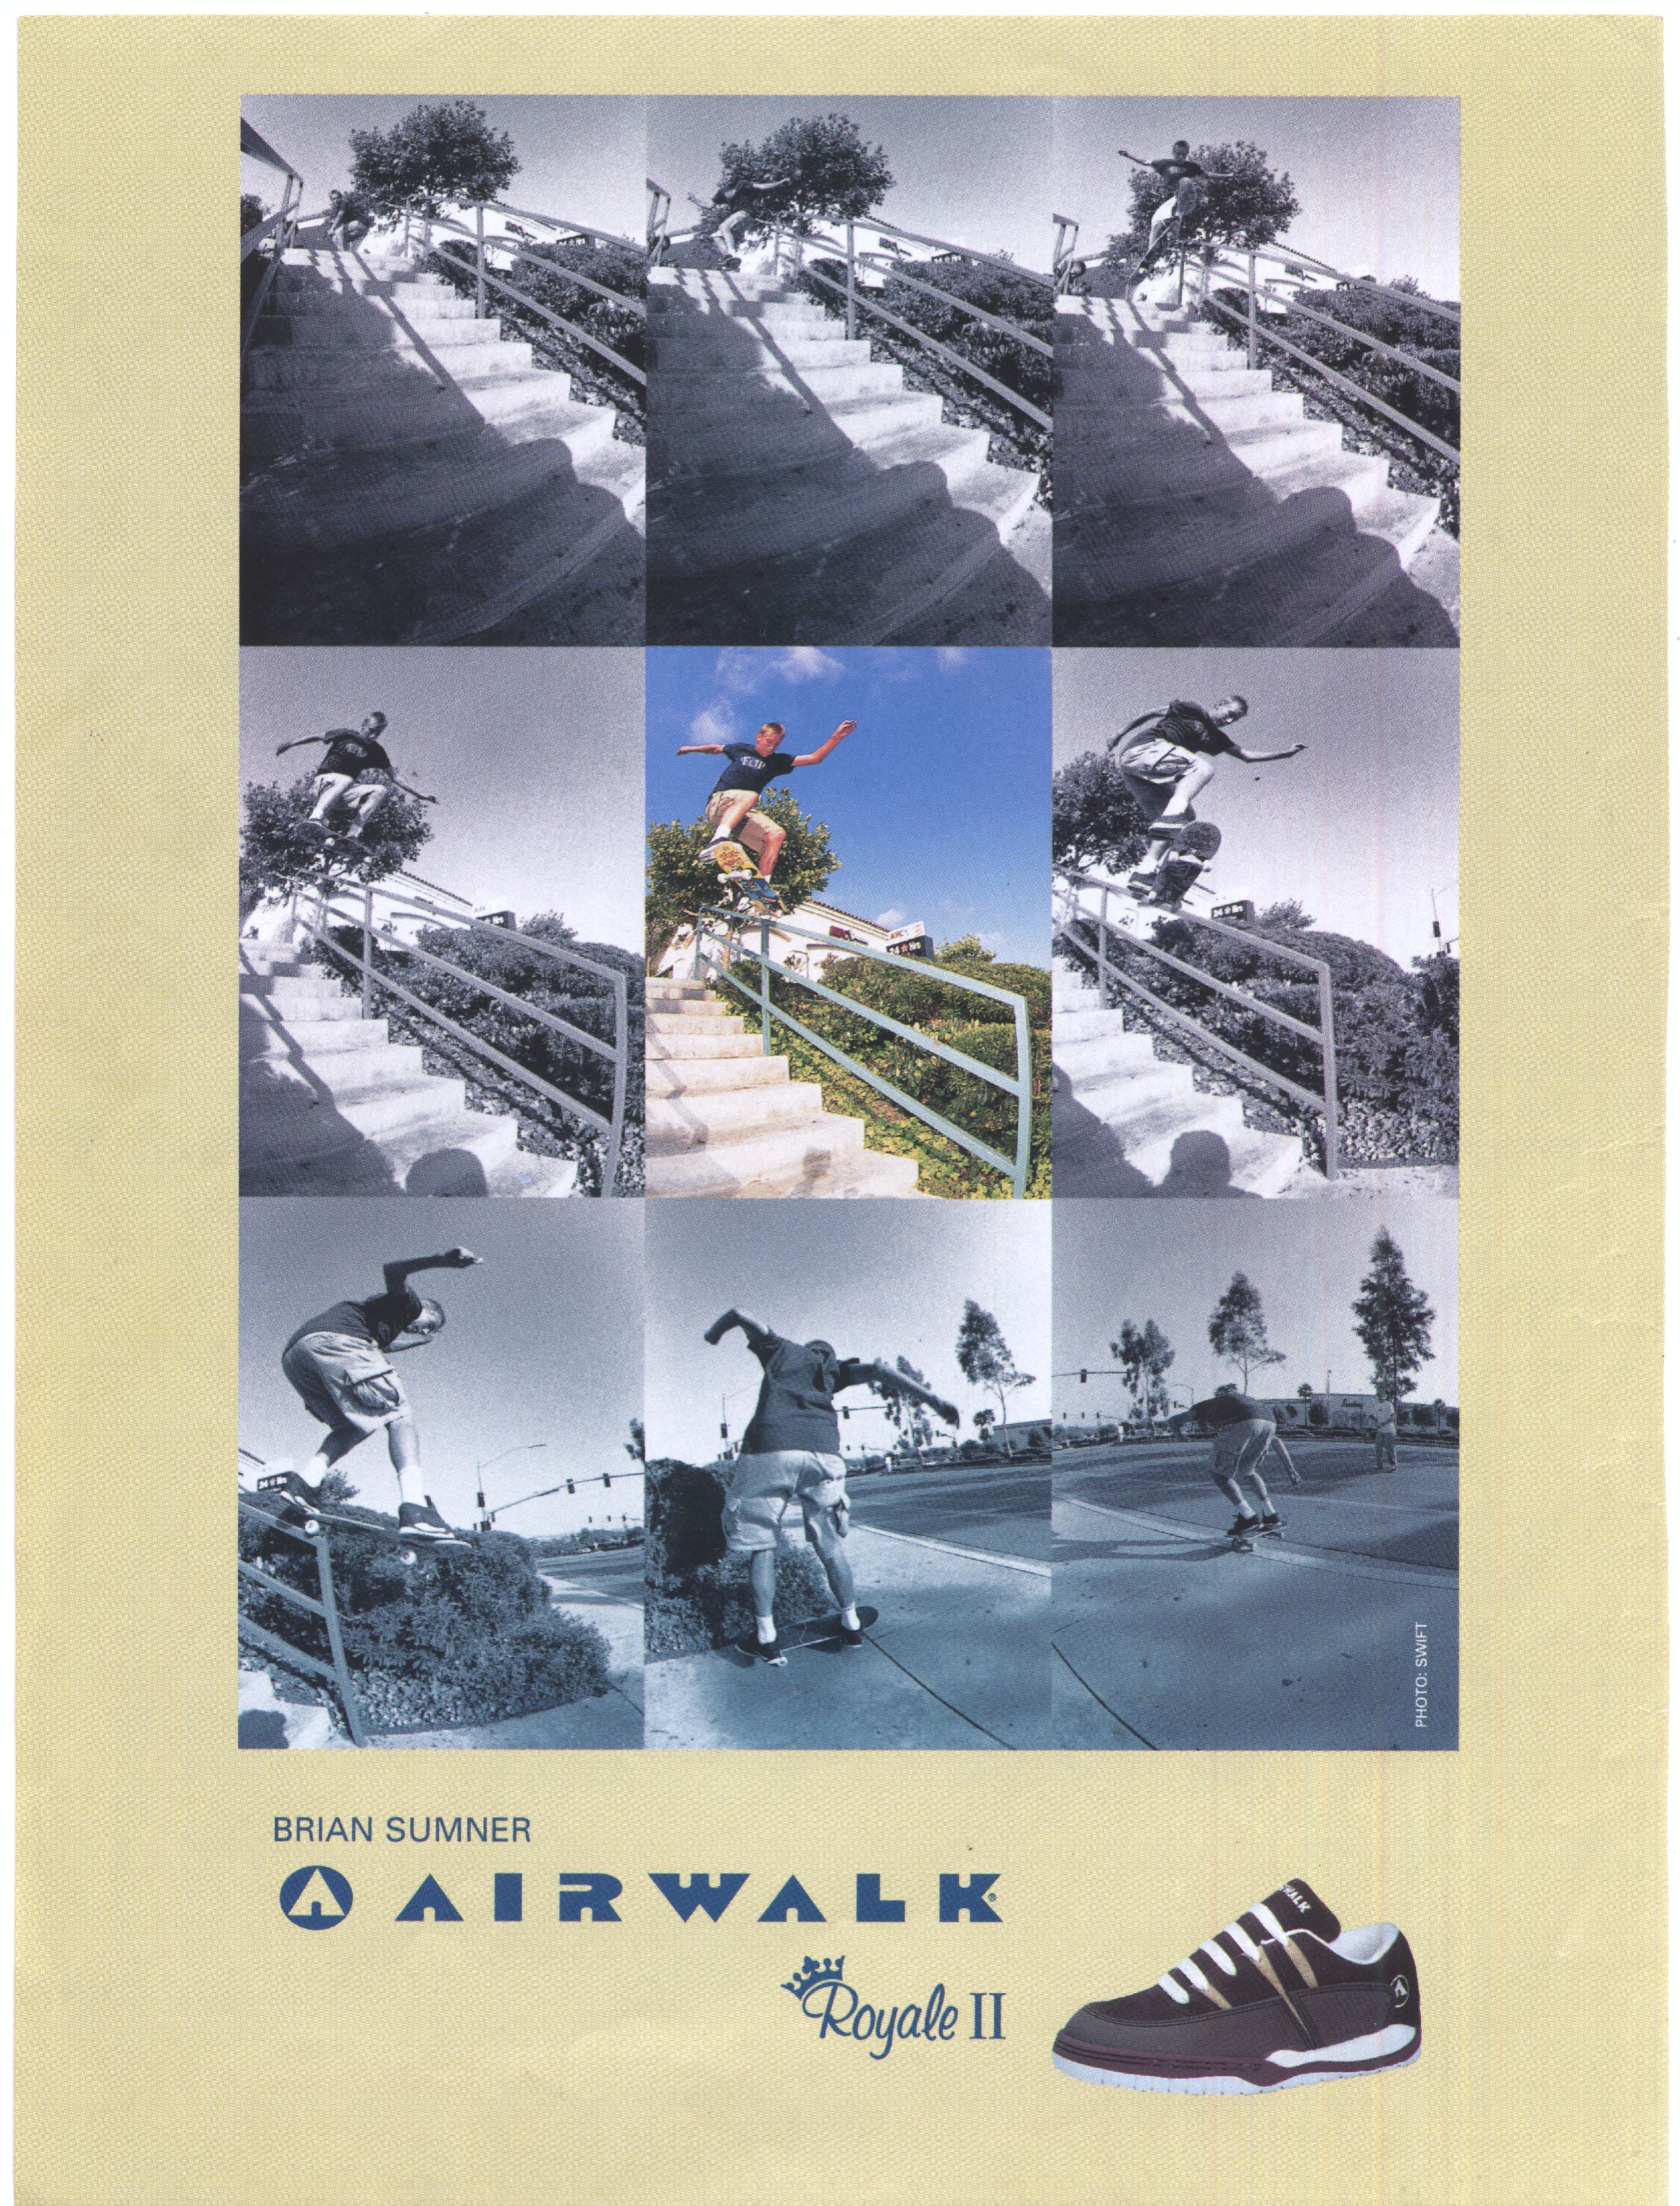 4 Airwalk ad